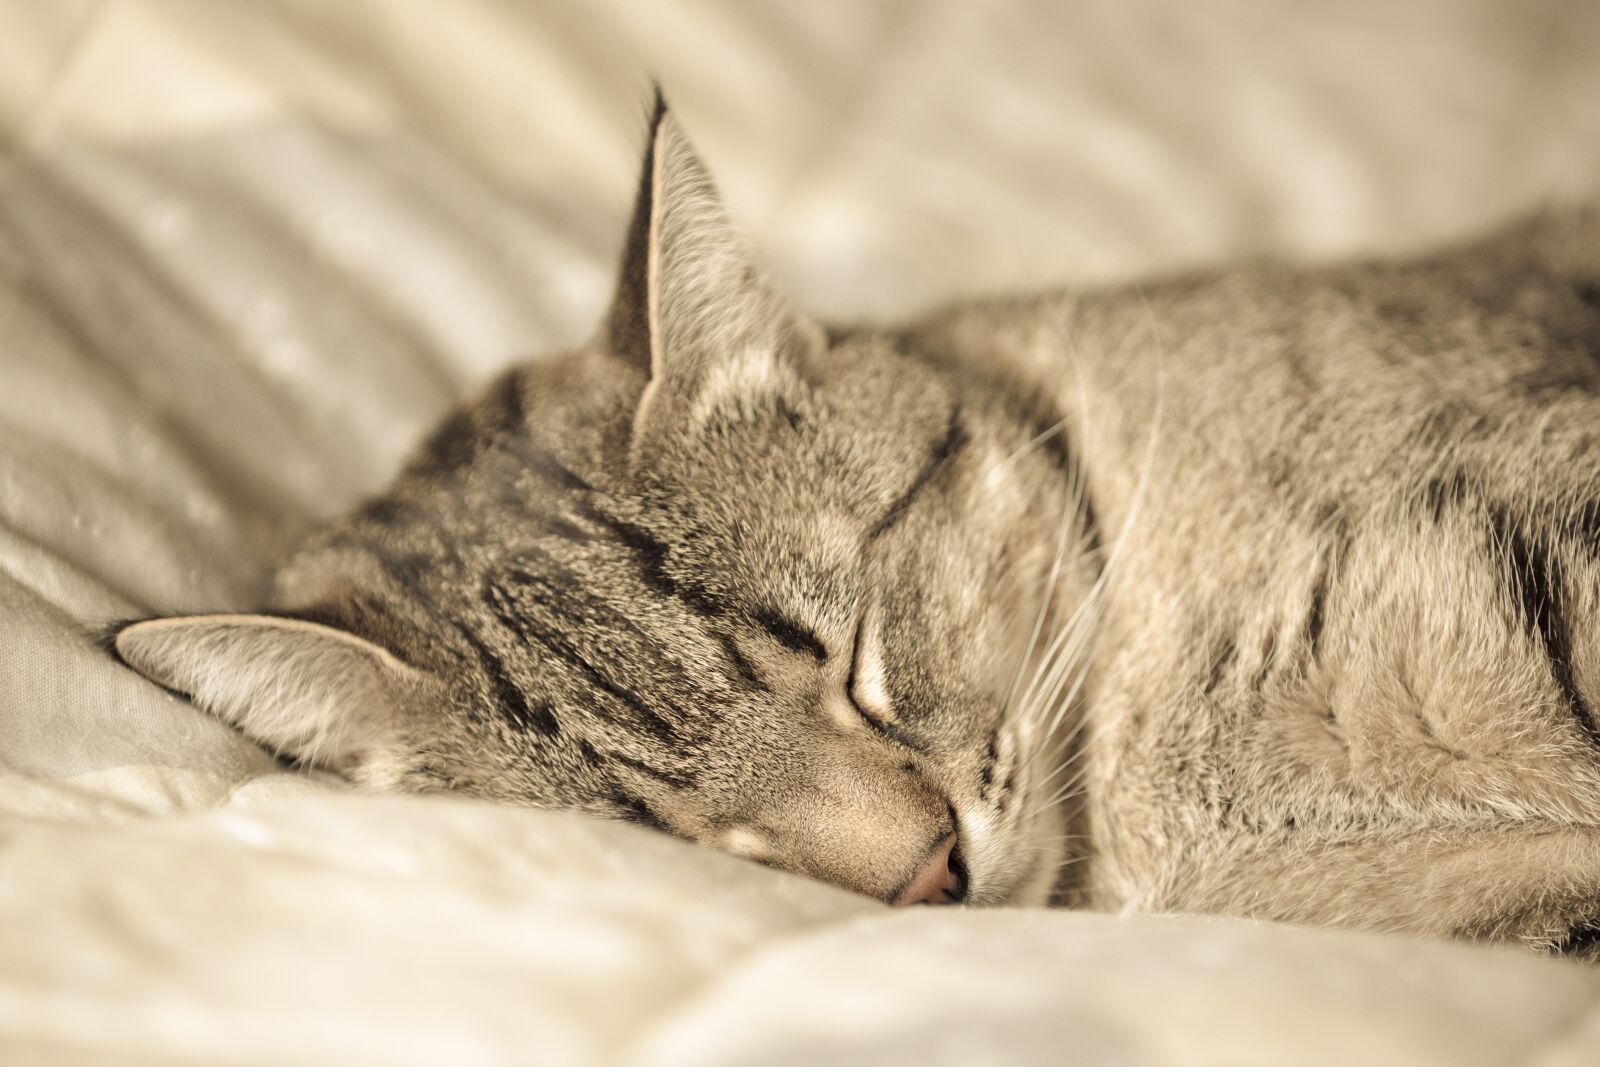 Canon EOS 5D Mark IV sample photo. Cat, sleep, portrait photography